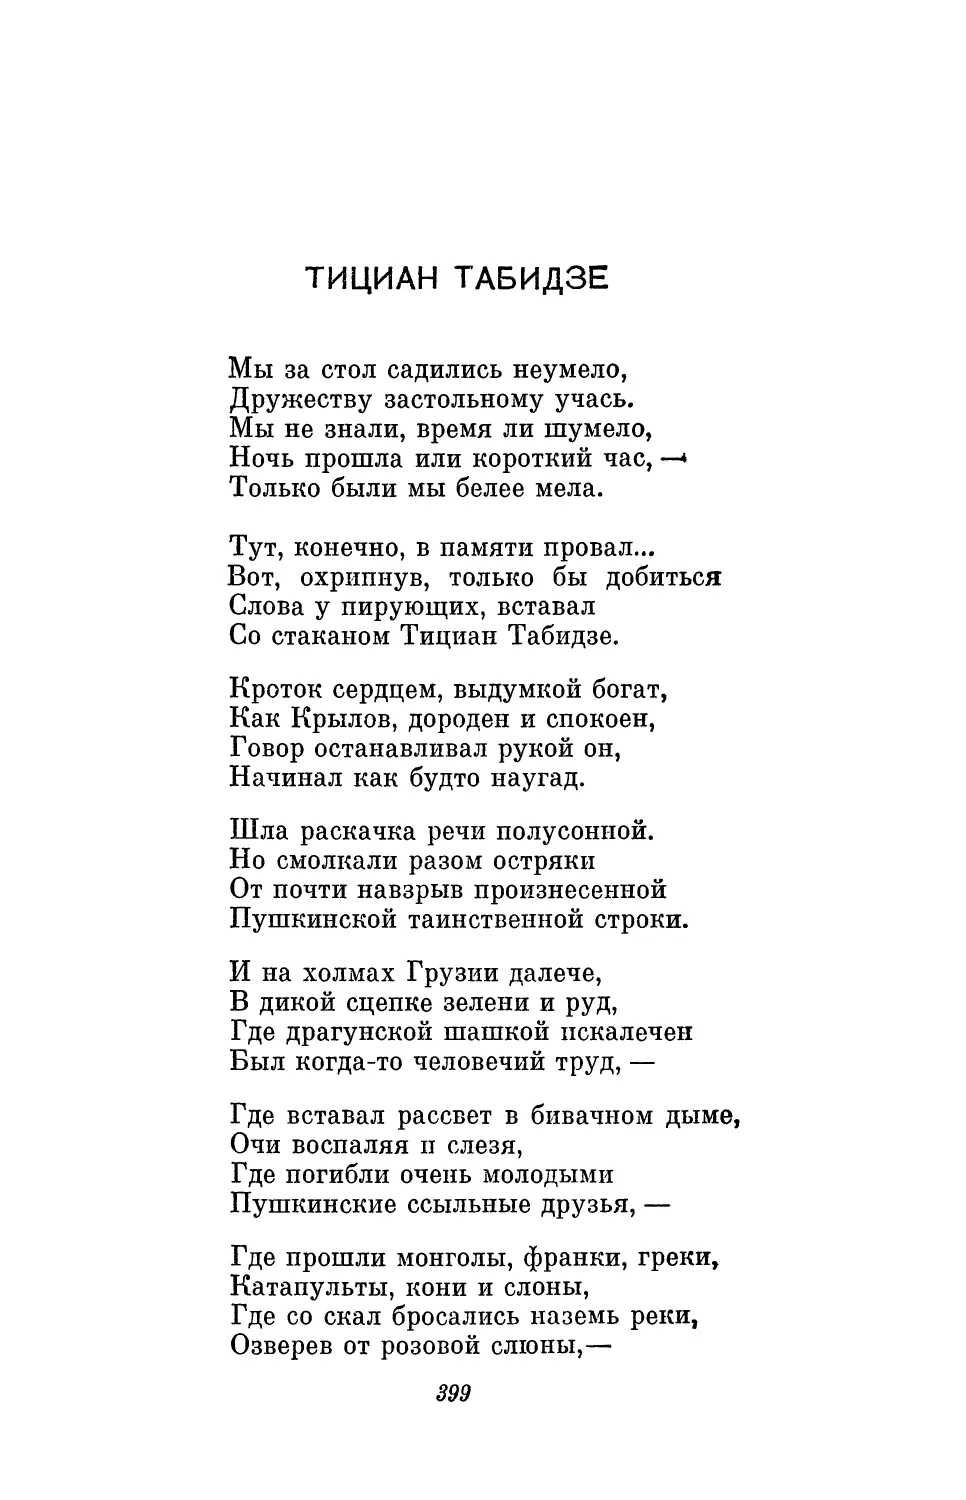 Тициан Табидзе